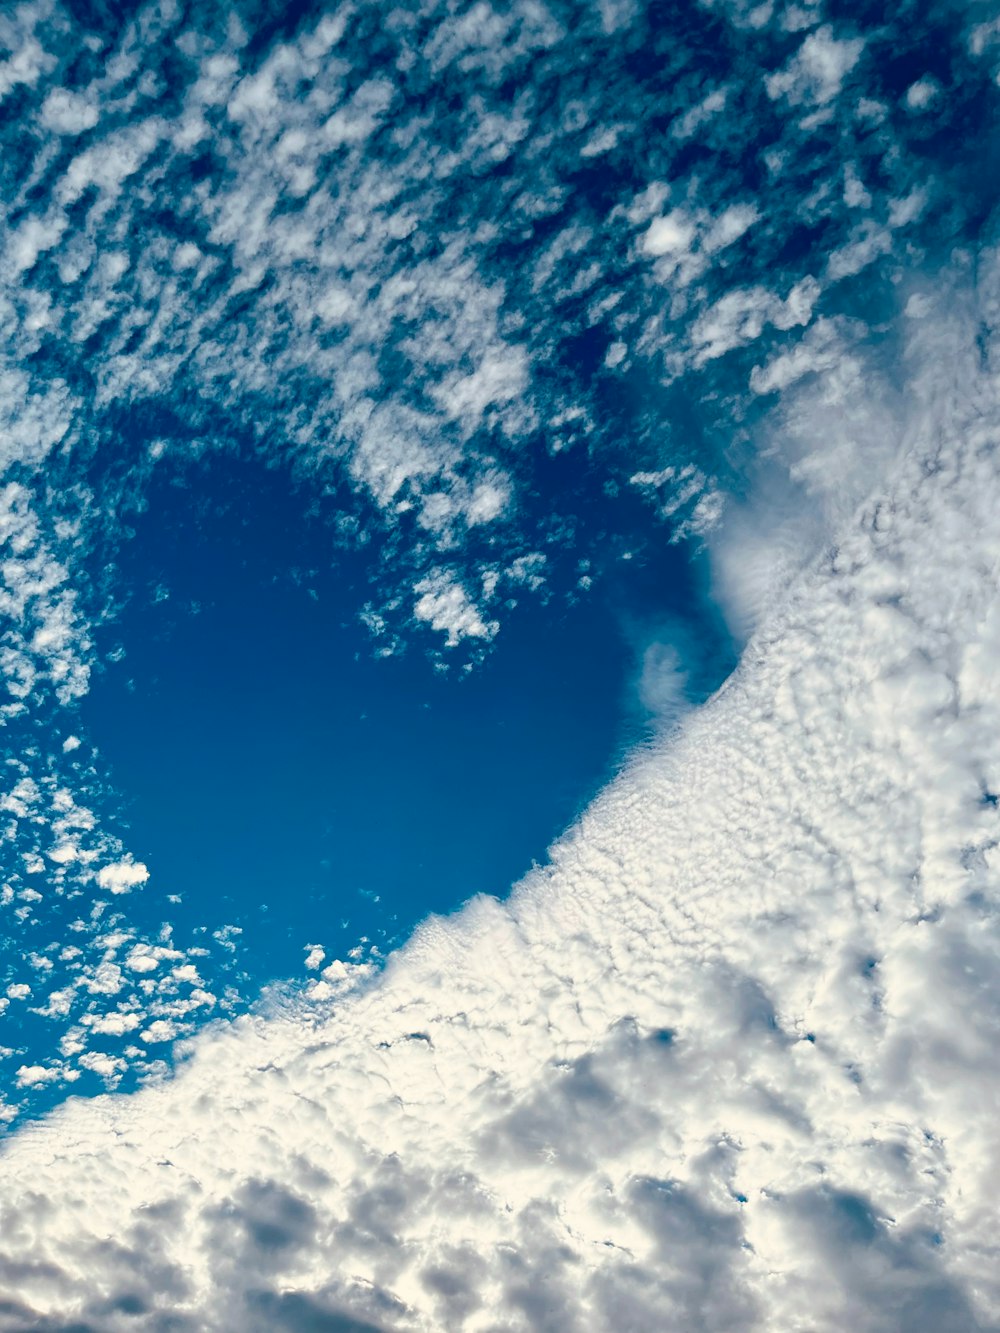 a heart shaped cloud in a blue sky